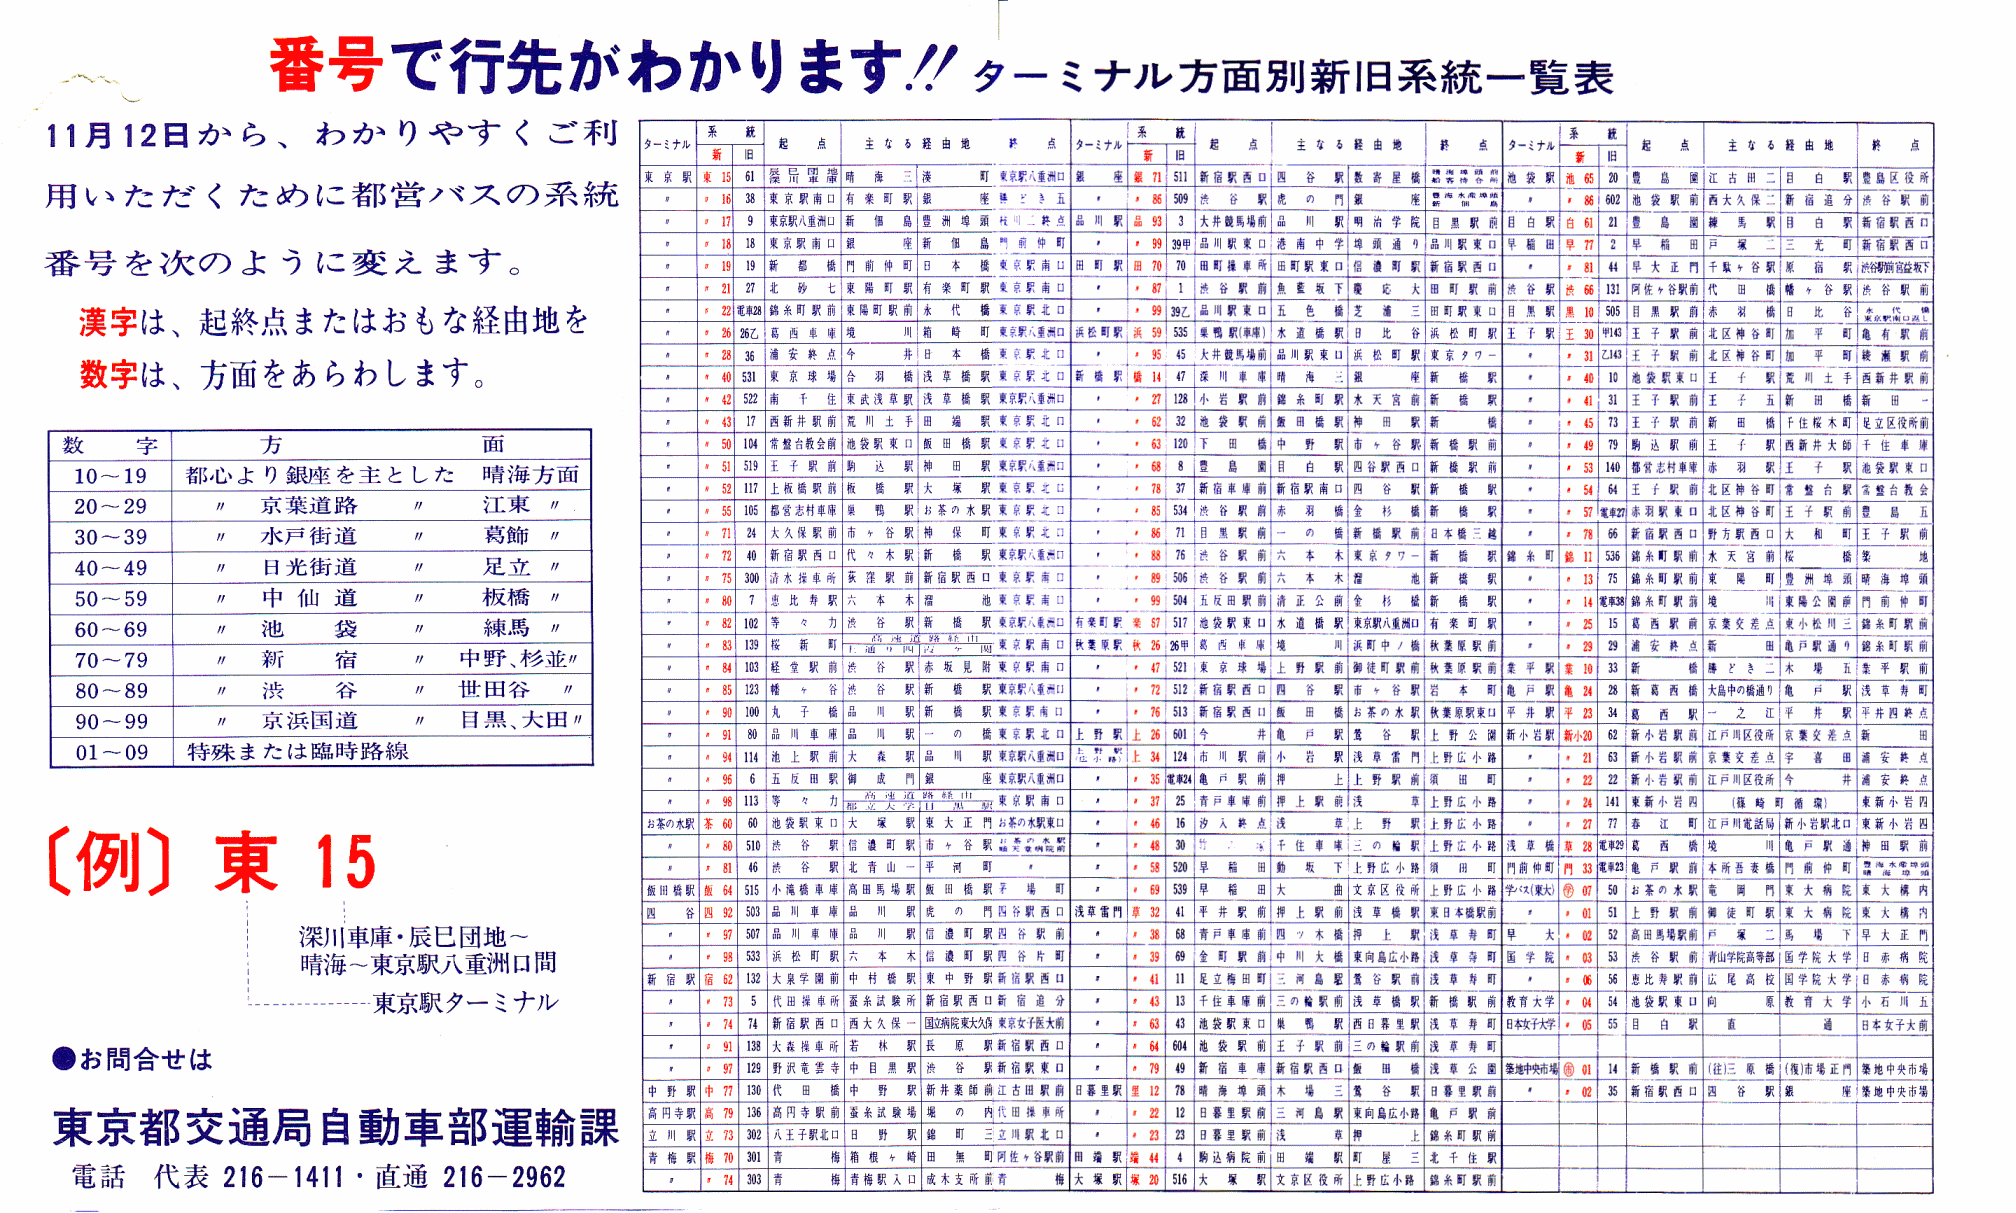 旧－新系統番号・早見表(昭和47年) | 都営バス資料館